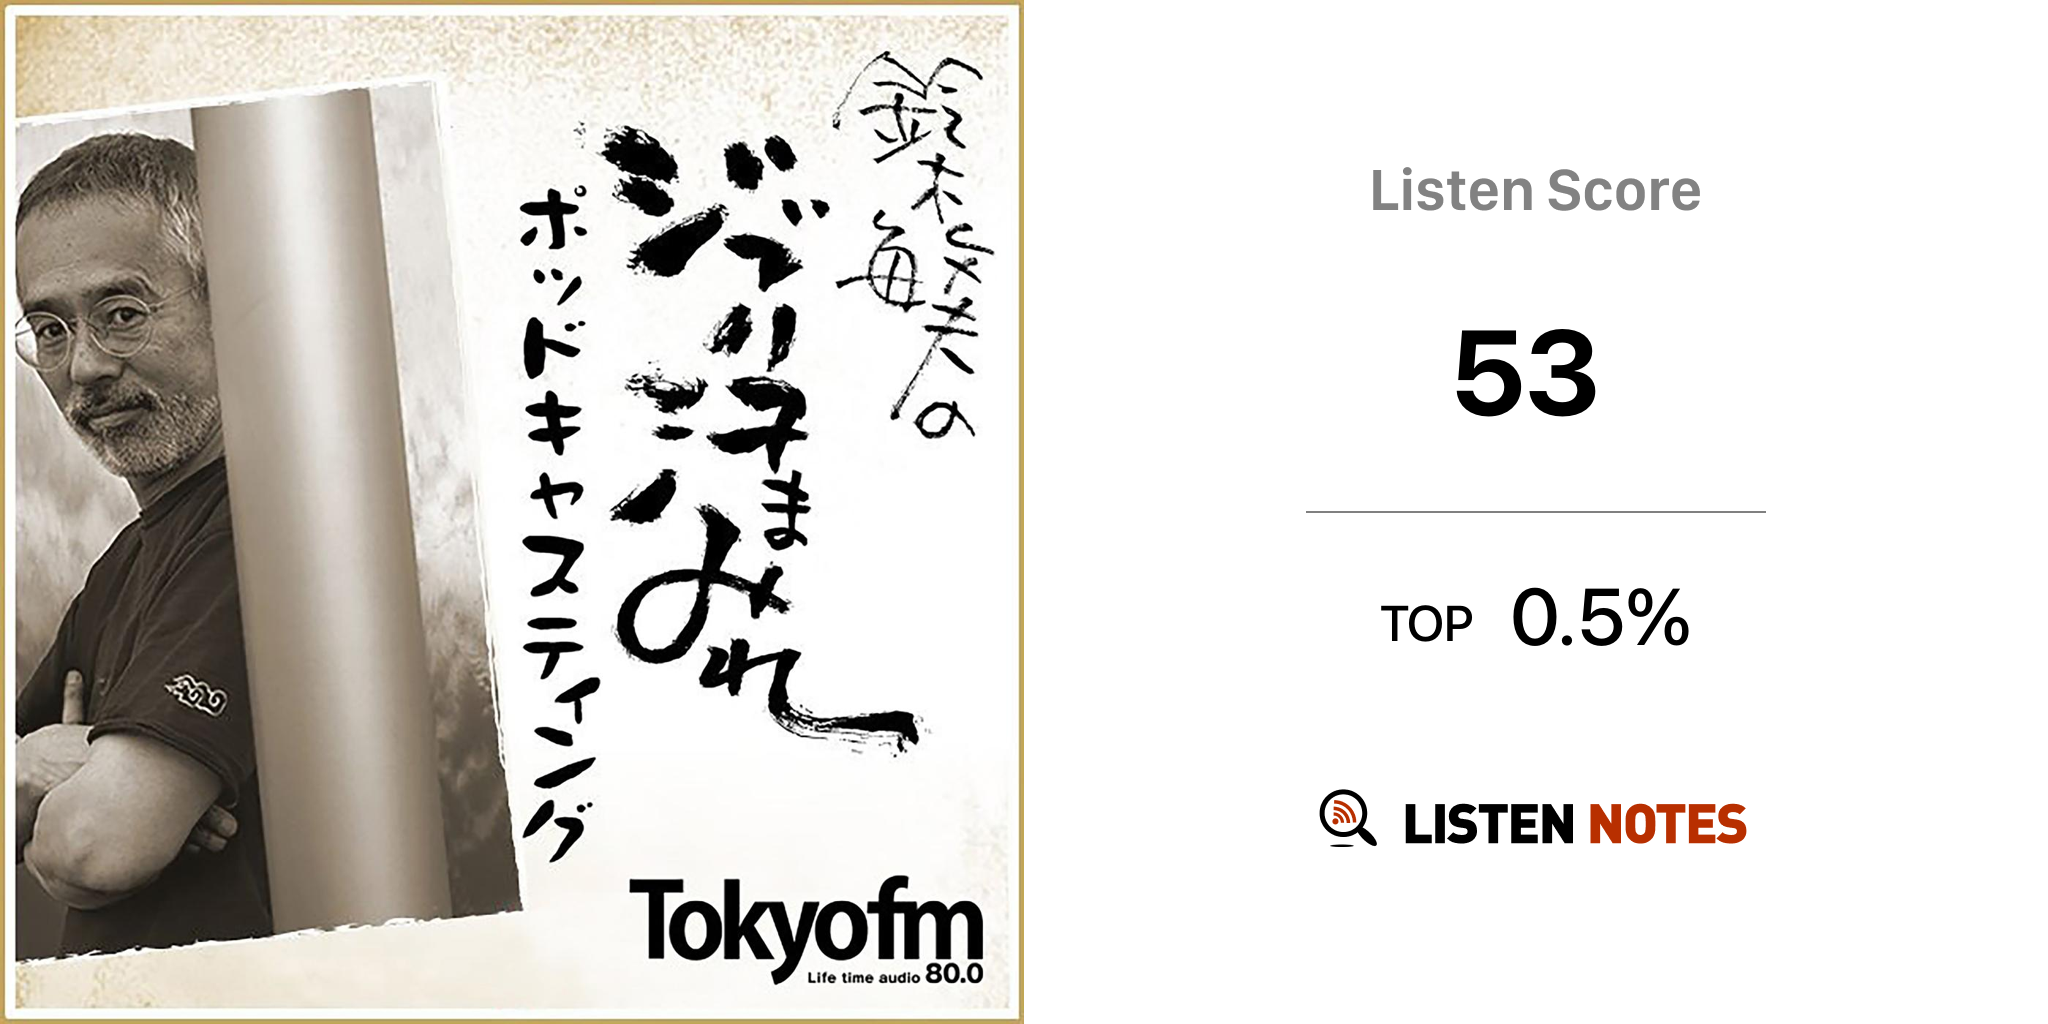 鈴木敏夫のジブリ汗まみれ Podcast Tokyo Fm Listen Notes